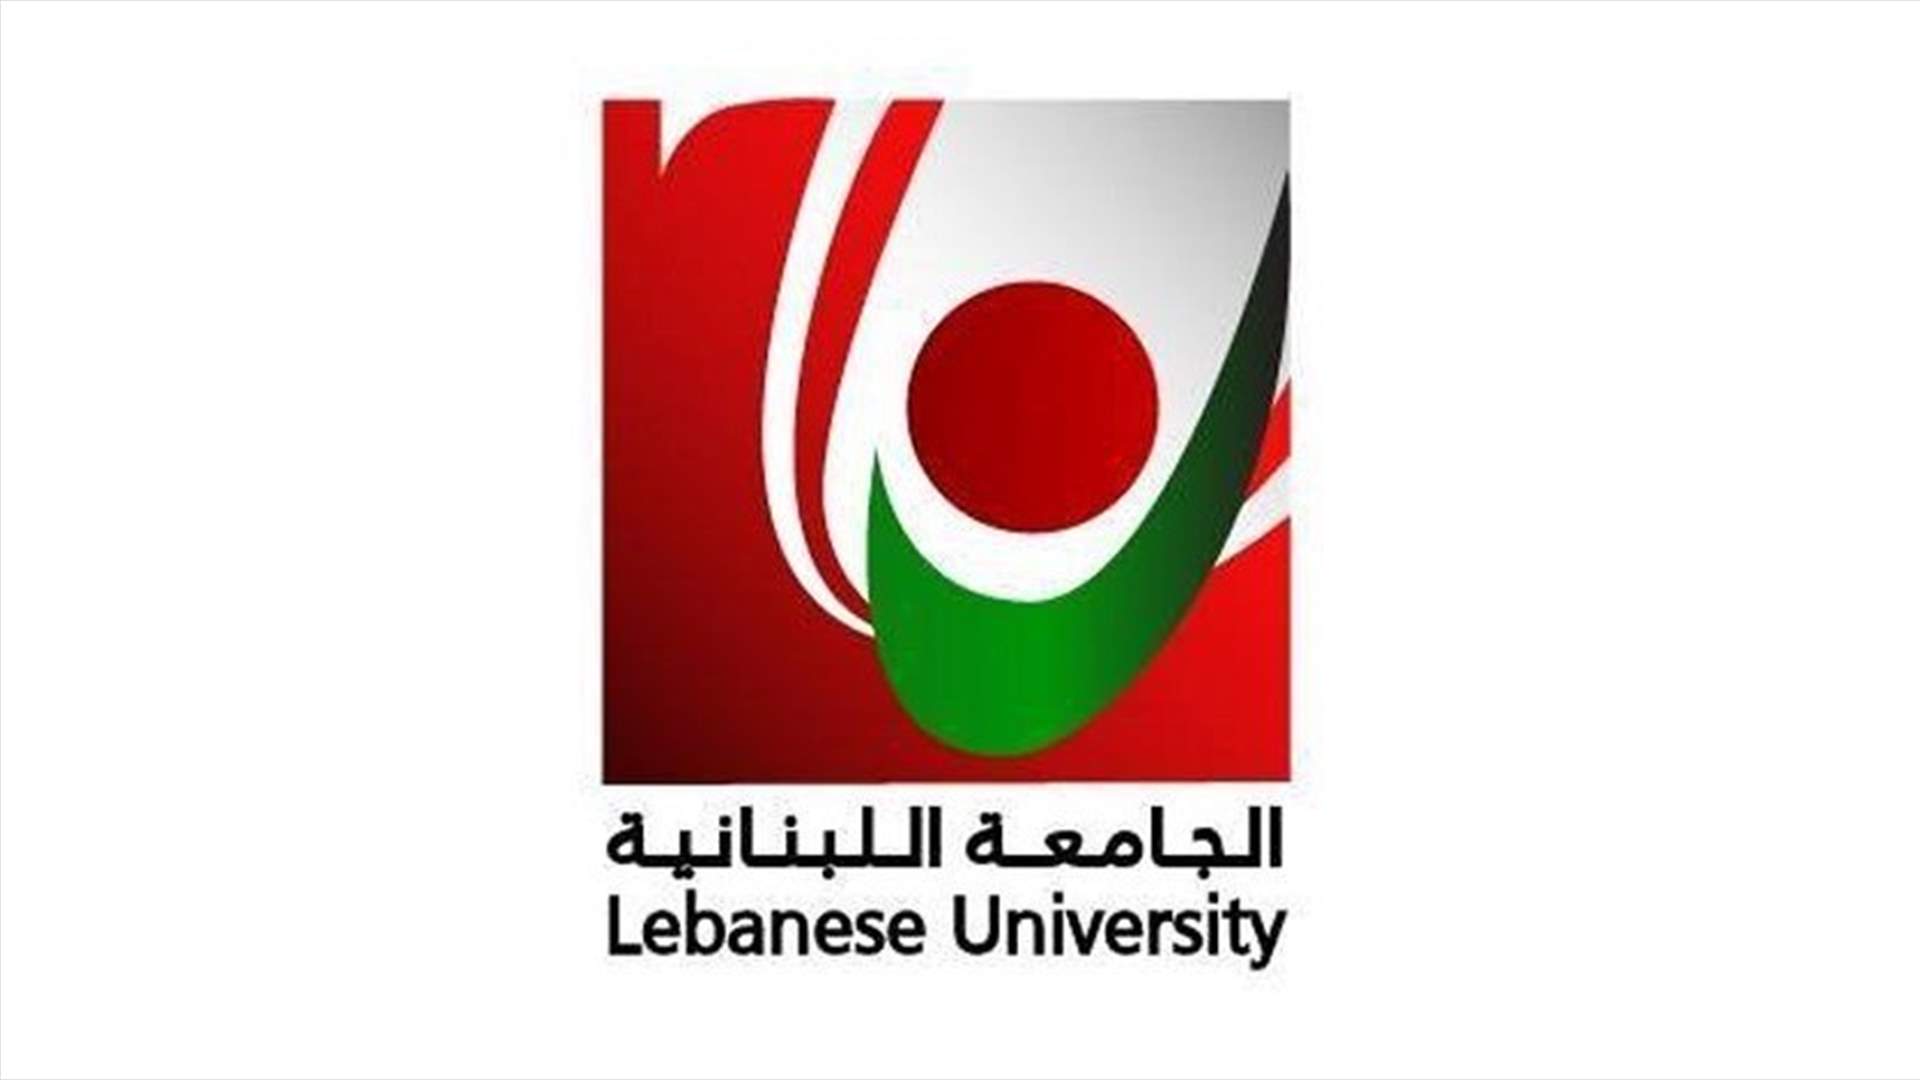 اجراءات وقائية في الجامعة اللبنانية مع استئناف الدروس وفترة الامتحانات... ماذا في التفاصيل؟